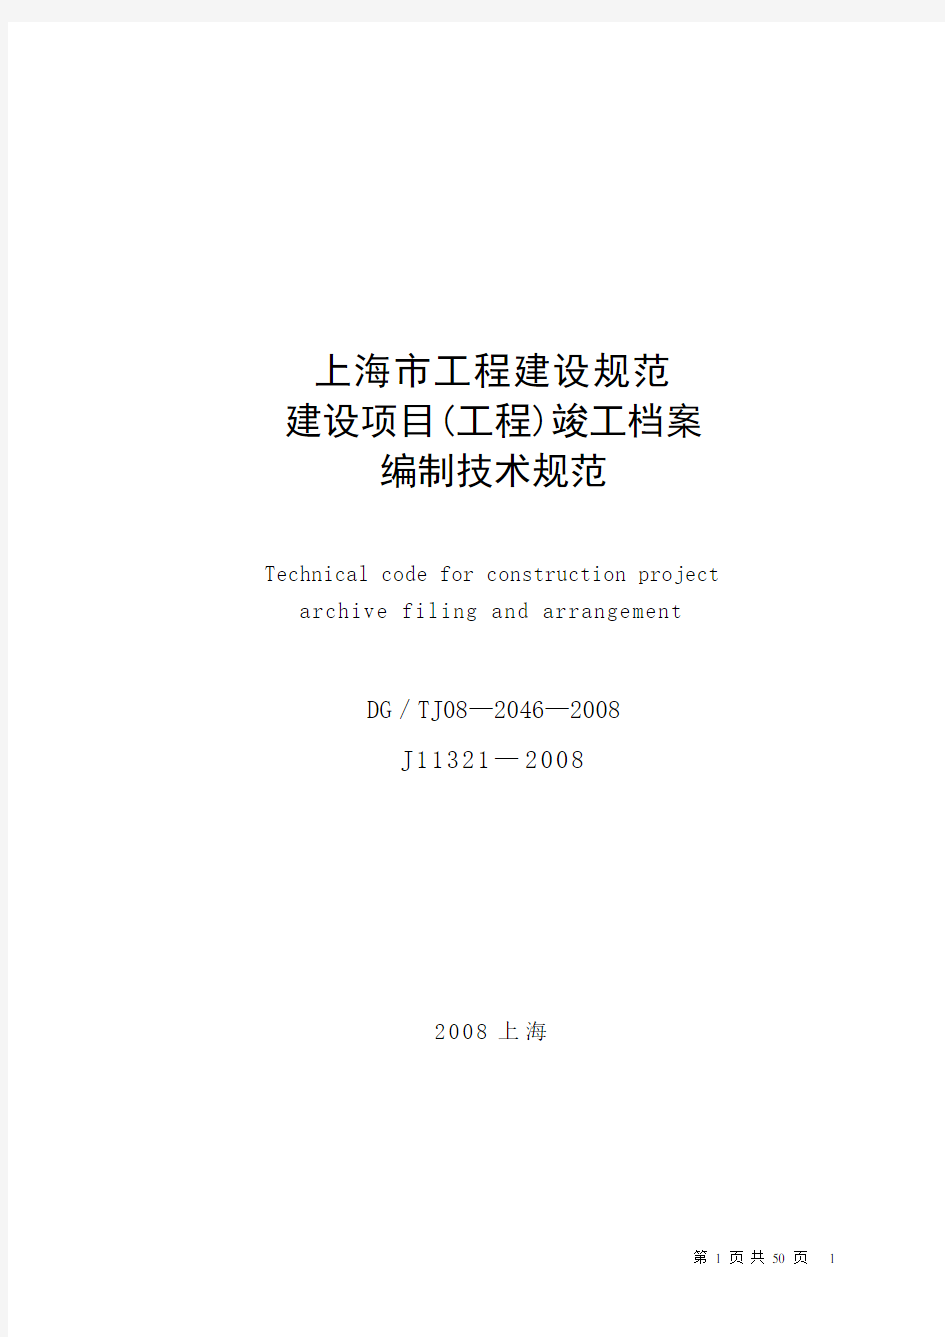 上海市建设项目(工程)竣工档案编制技术规范DGTJ08—2046—2008J11321—2009